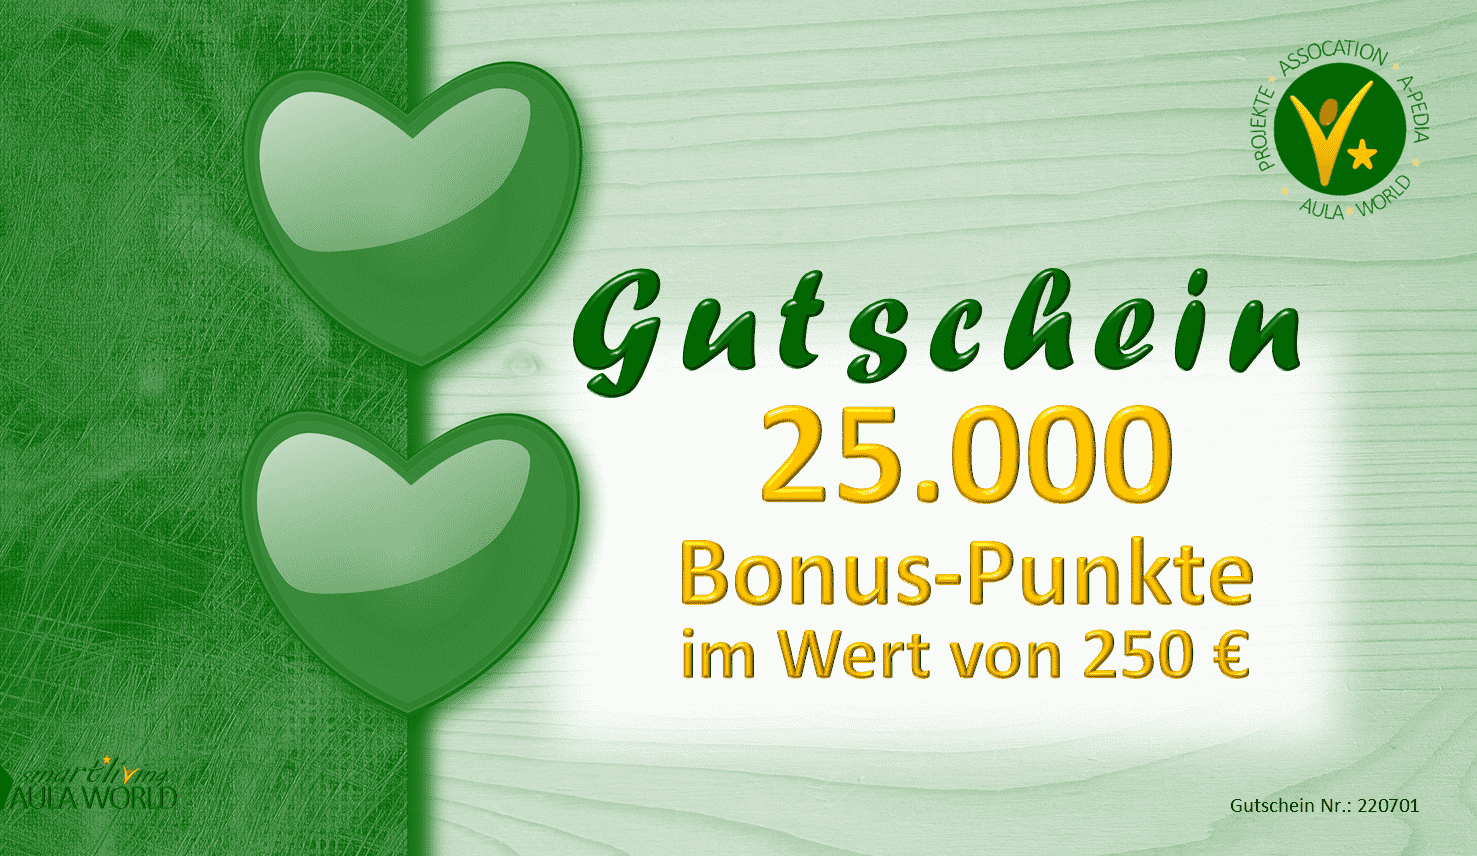 Geschenk-Gutschein "DONATION-250"